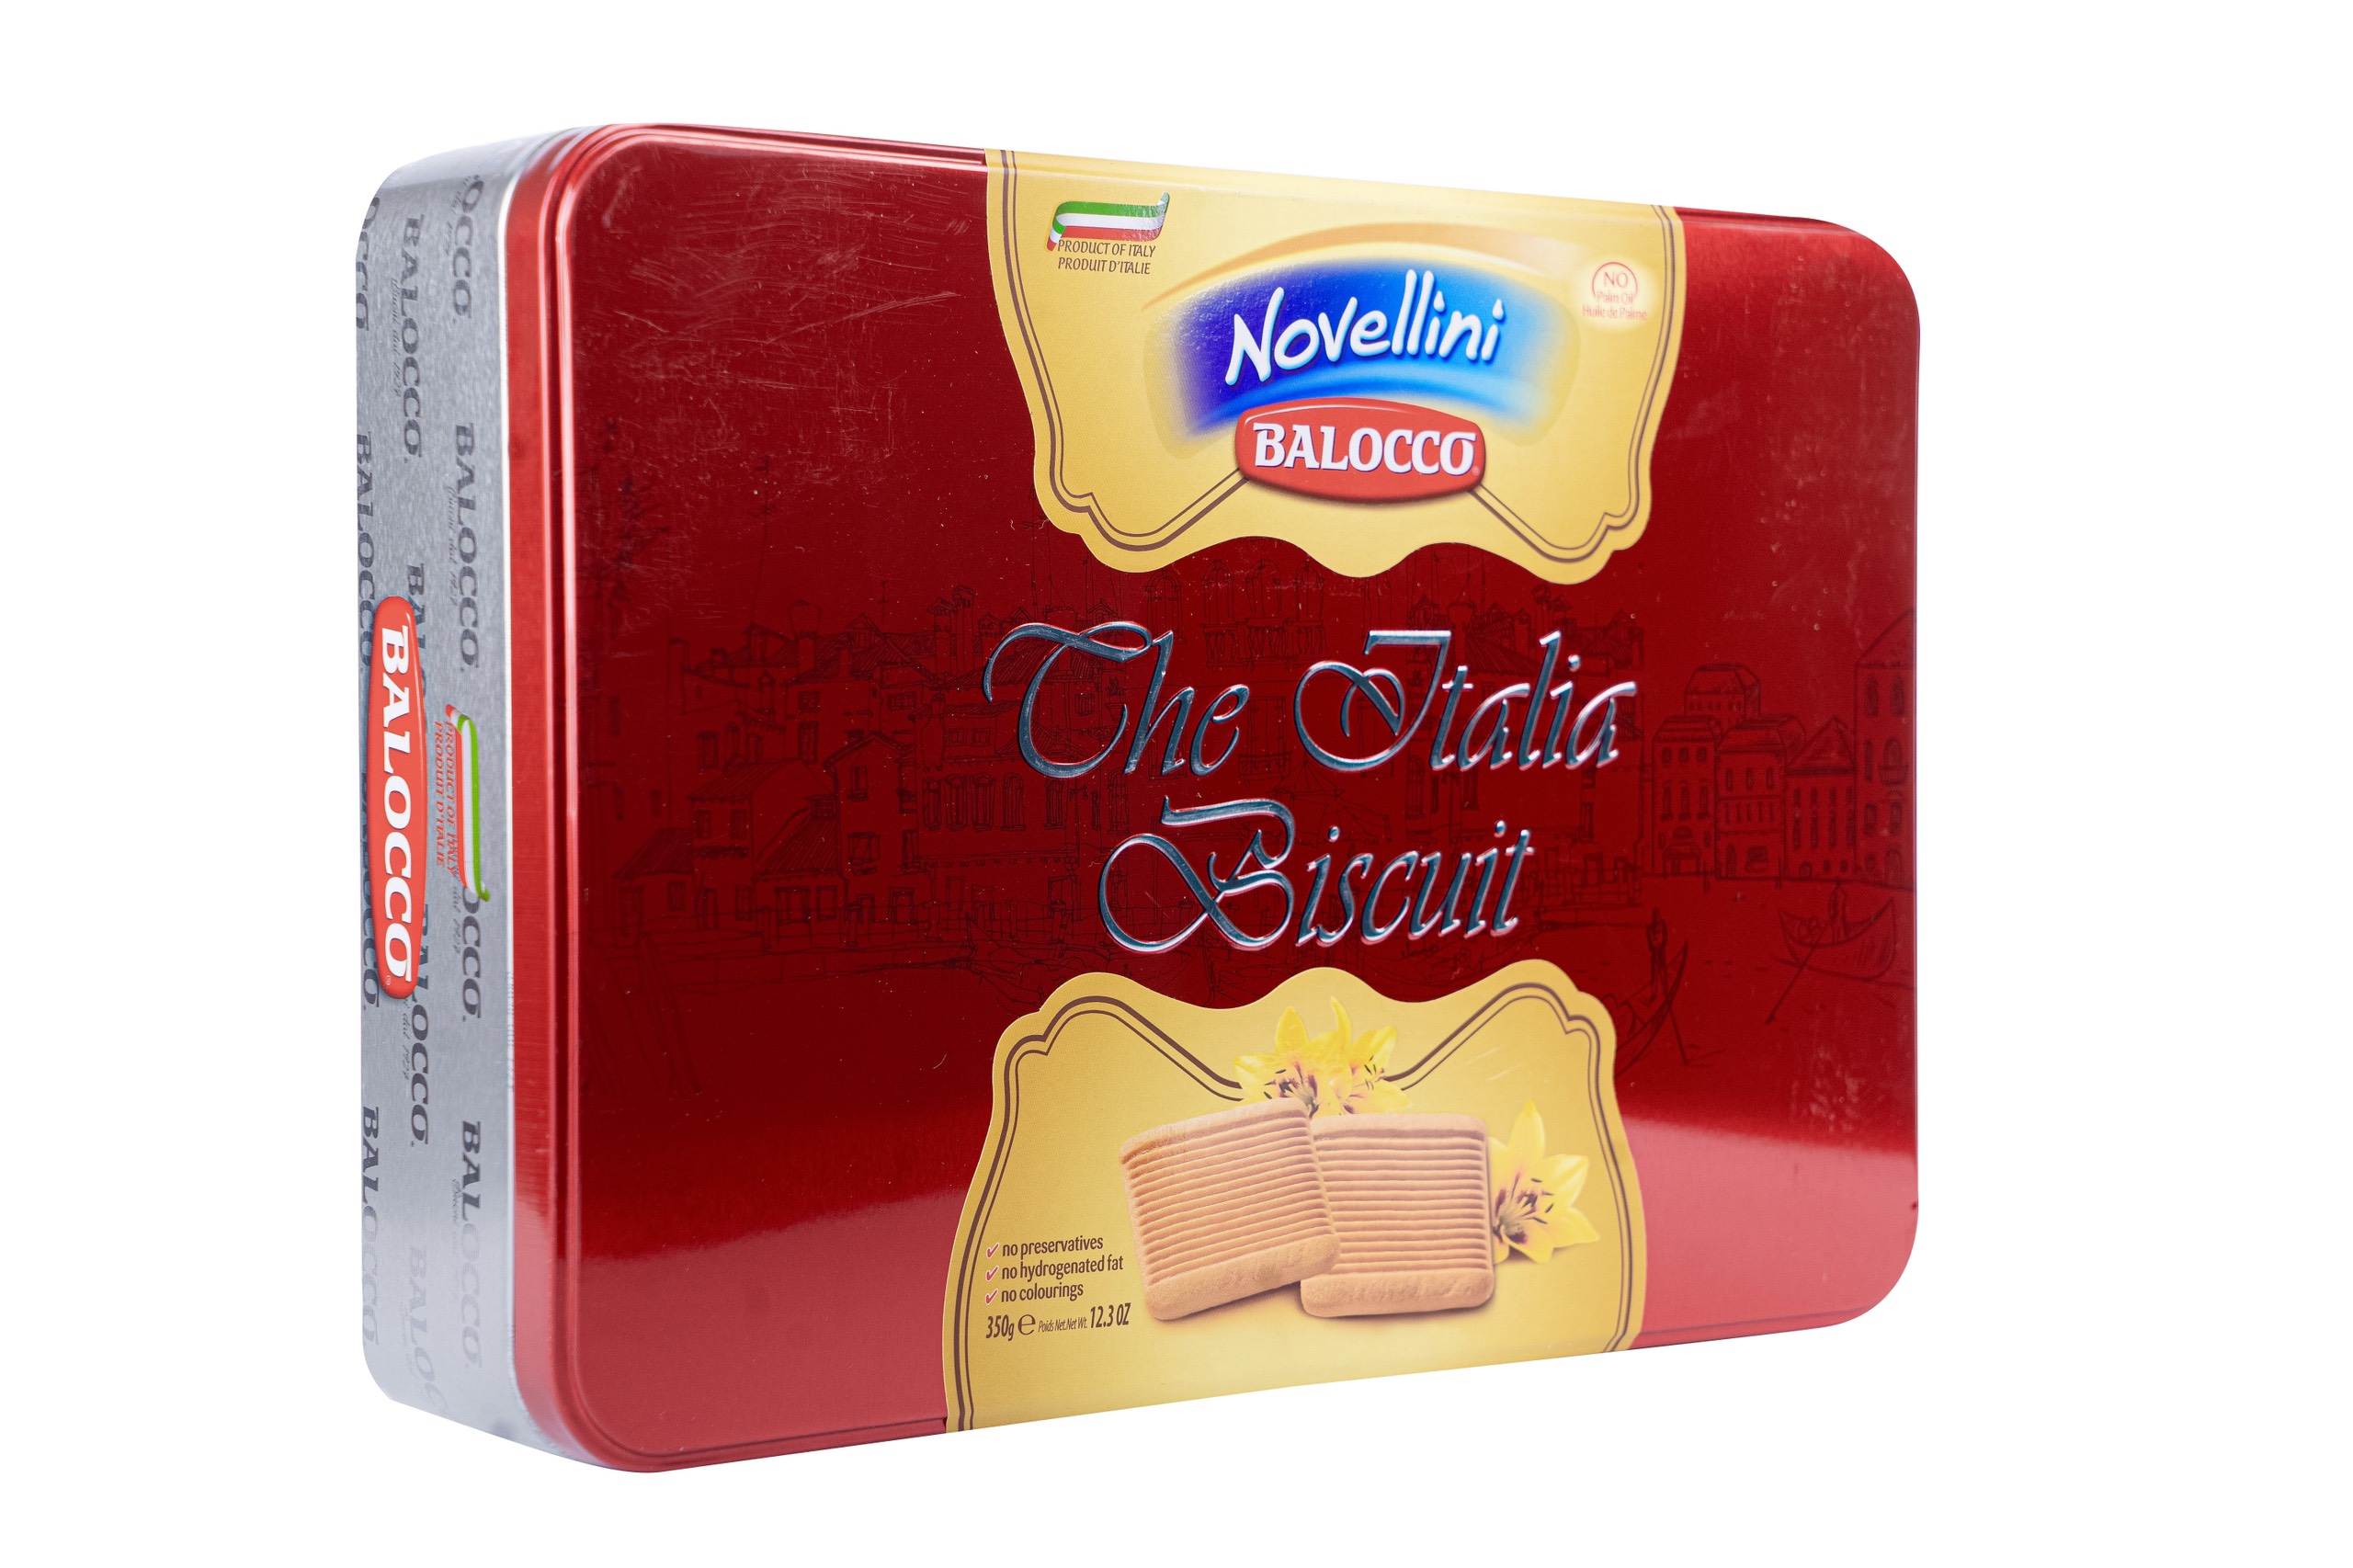 Bánh quy bơ hộp thiếc Novellini 350g màu đỏ